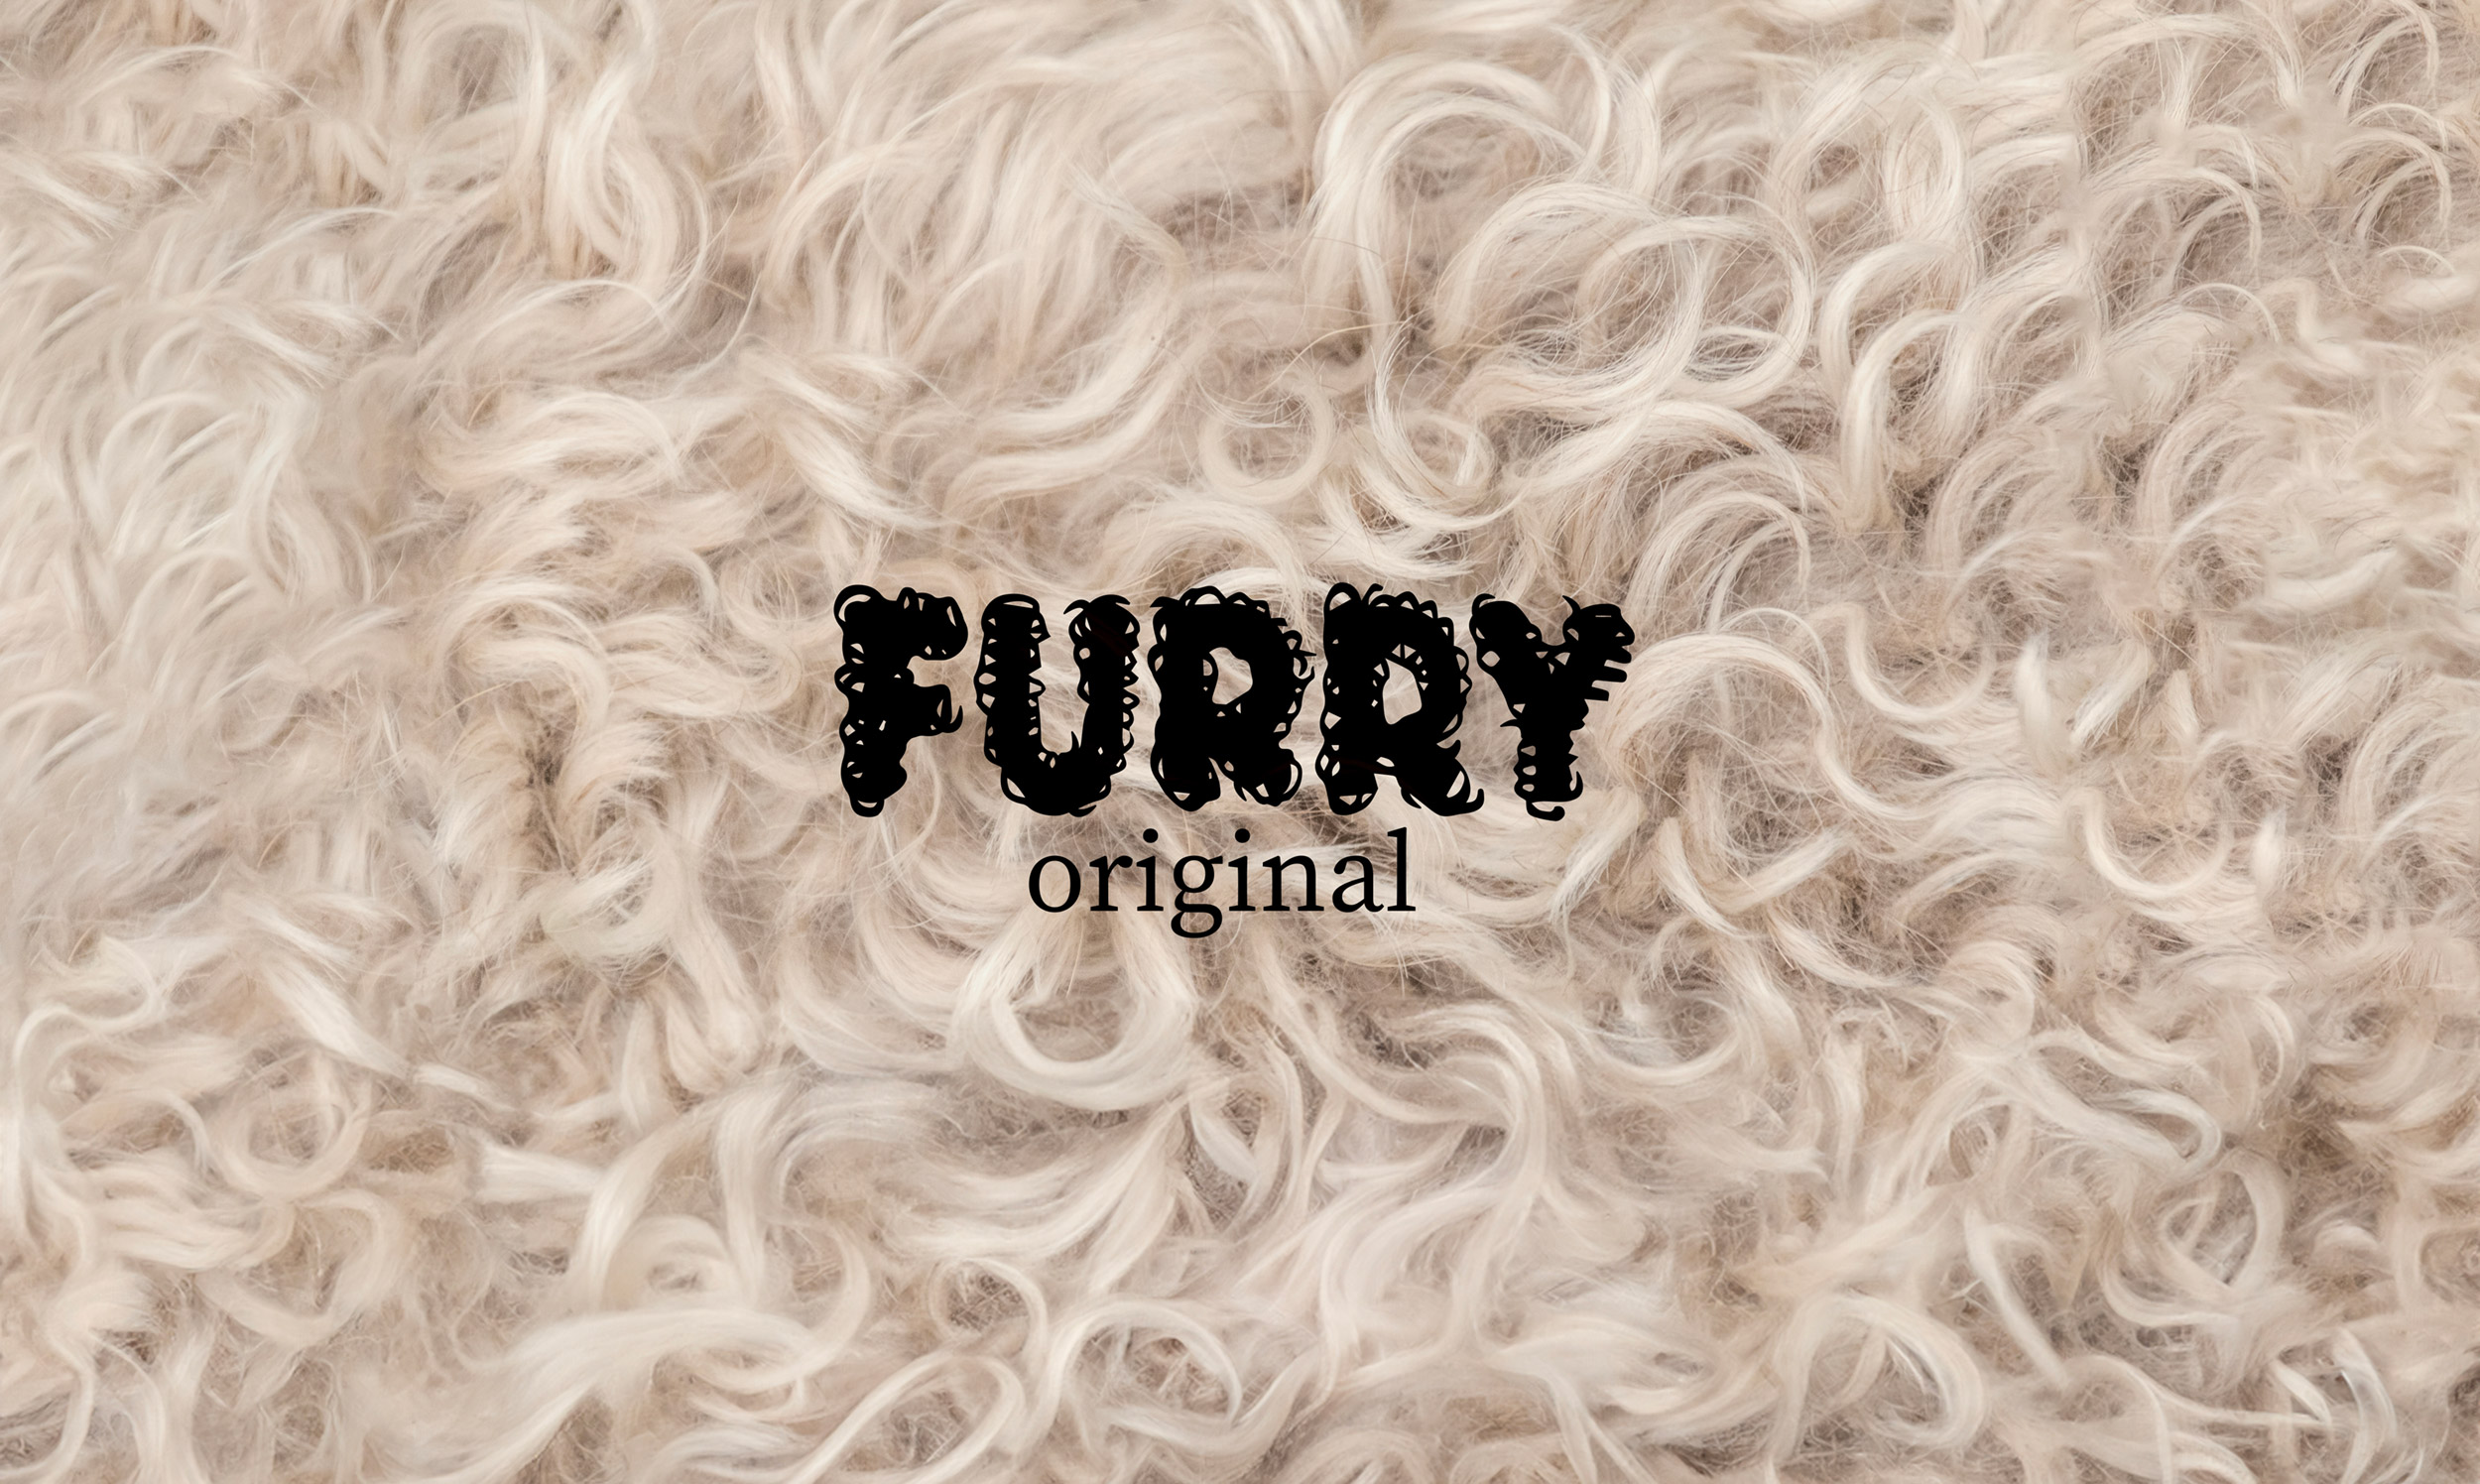 Furry original